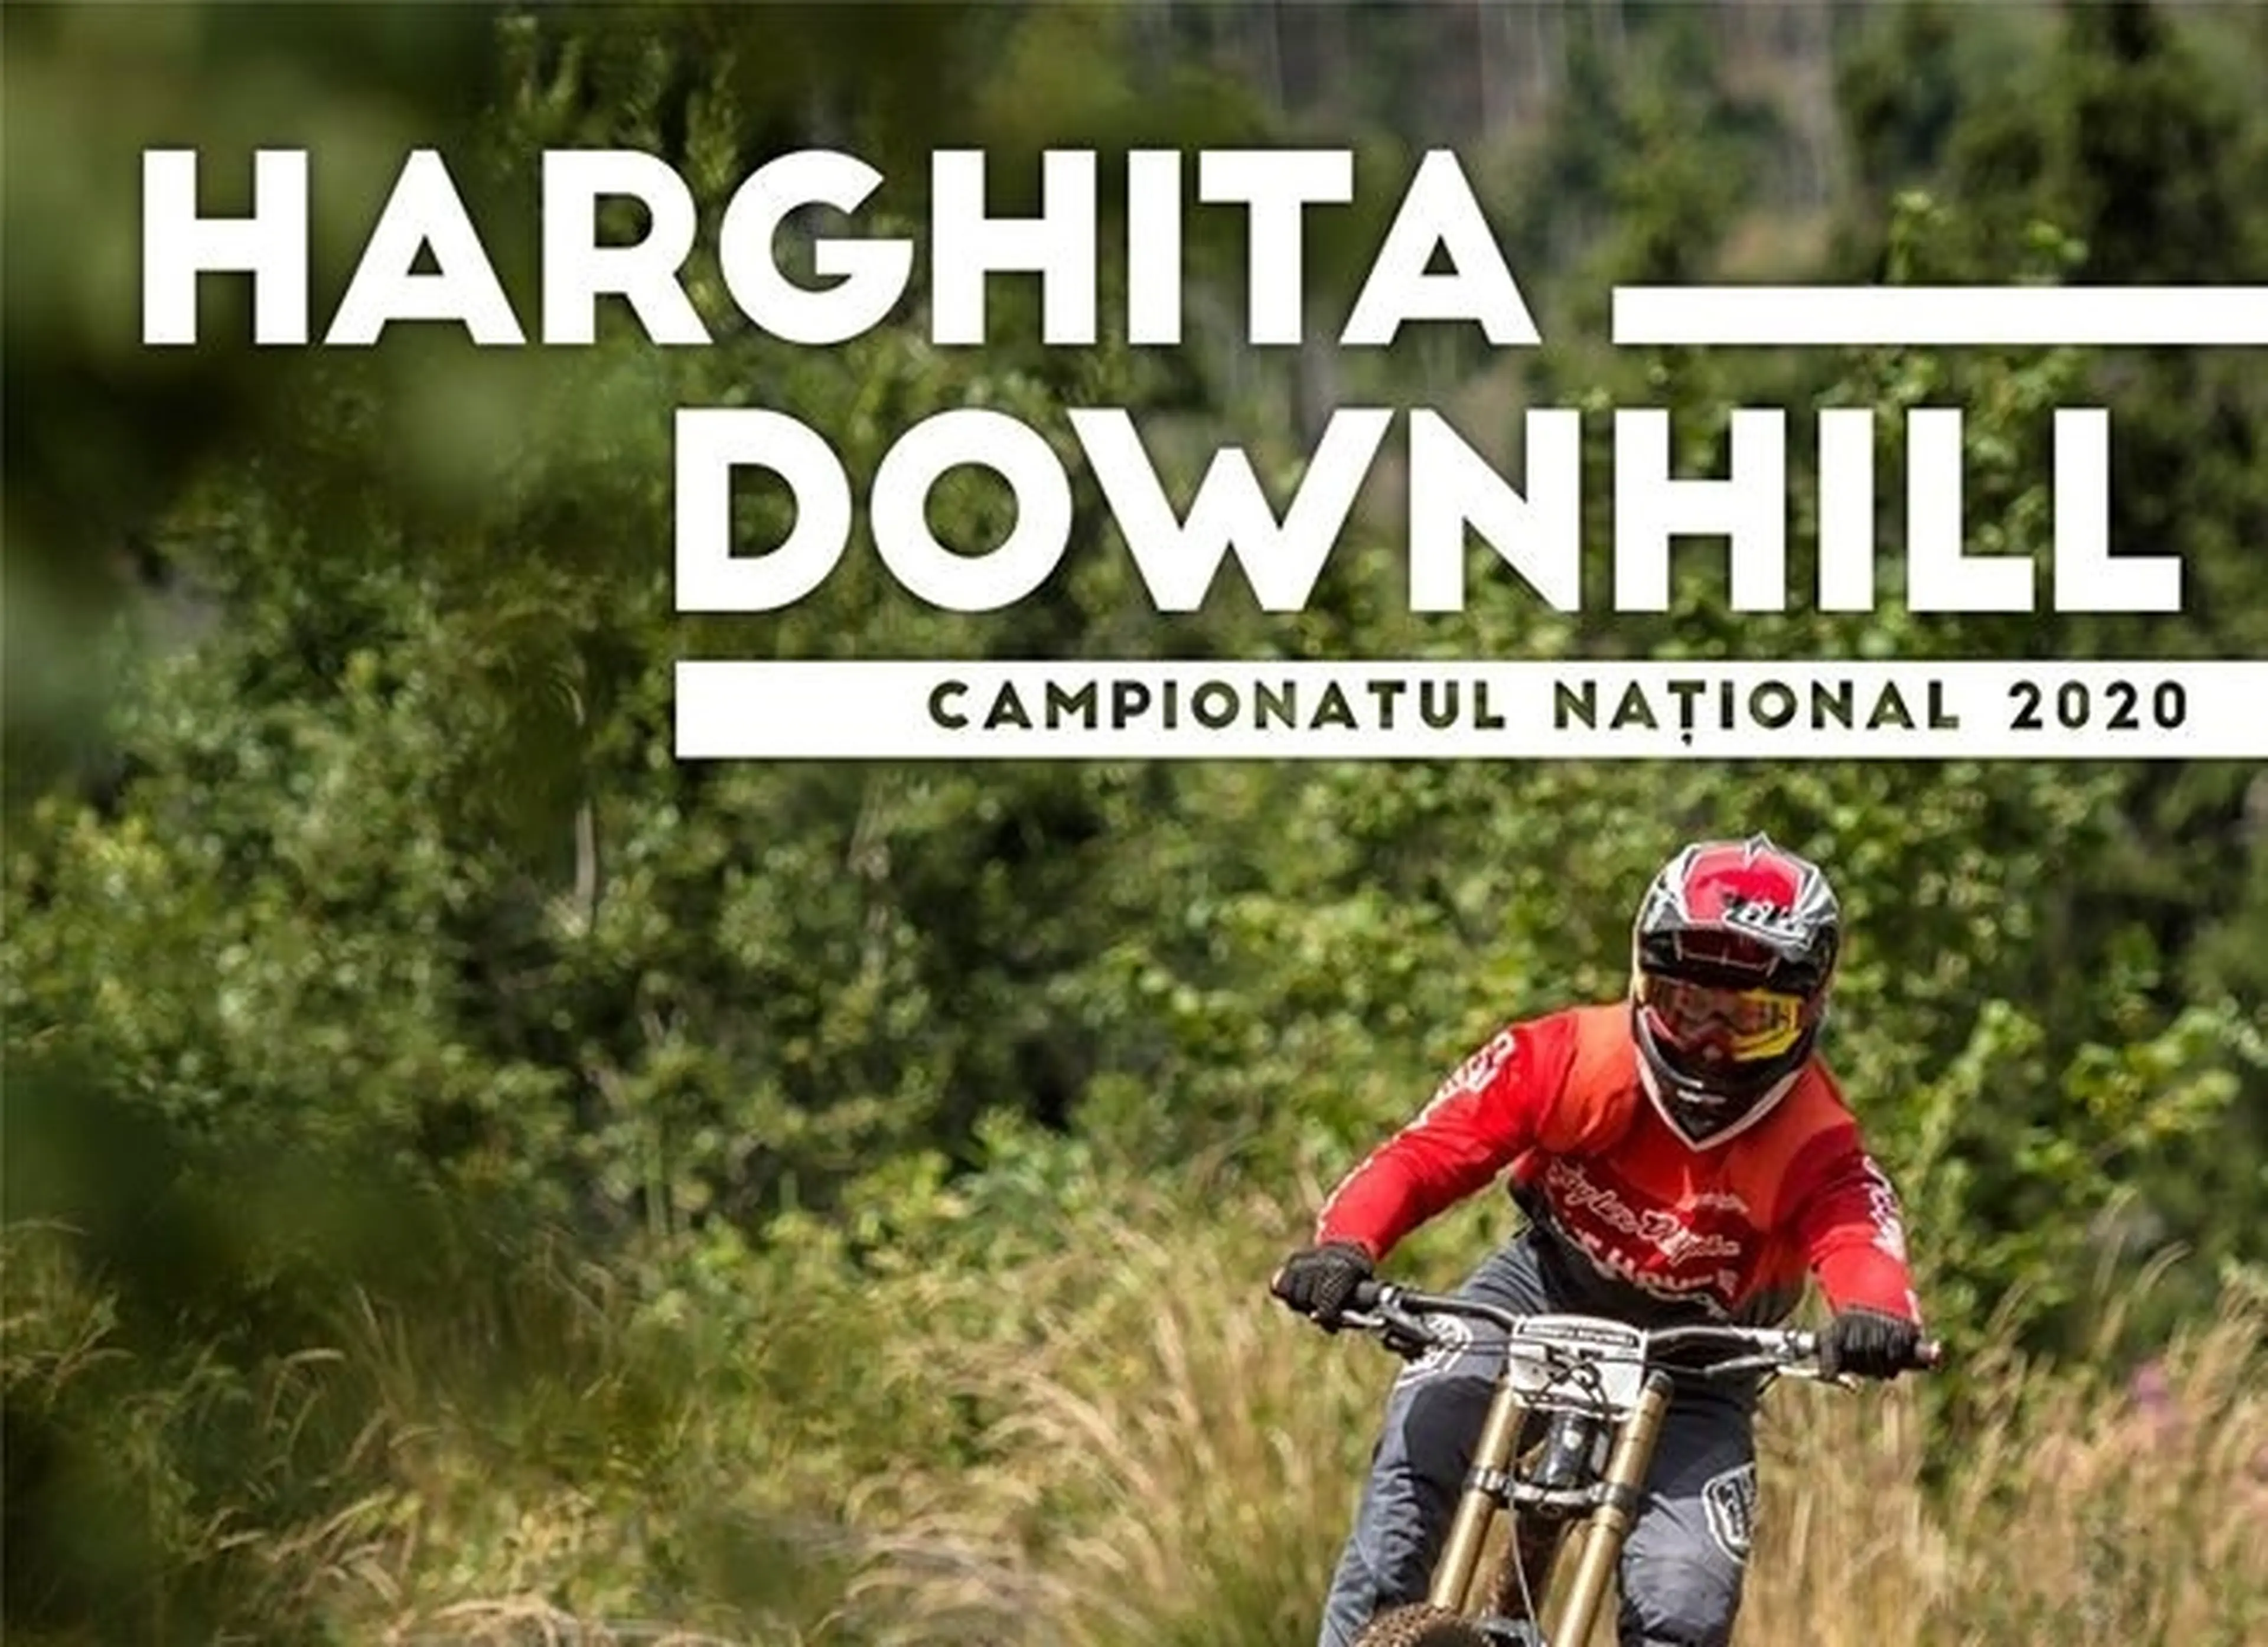 Racing reloaded: Campionatul Național de Downhill 2020, Harghita Mădăraș